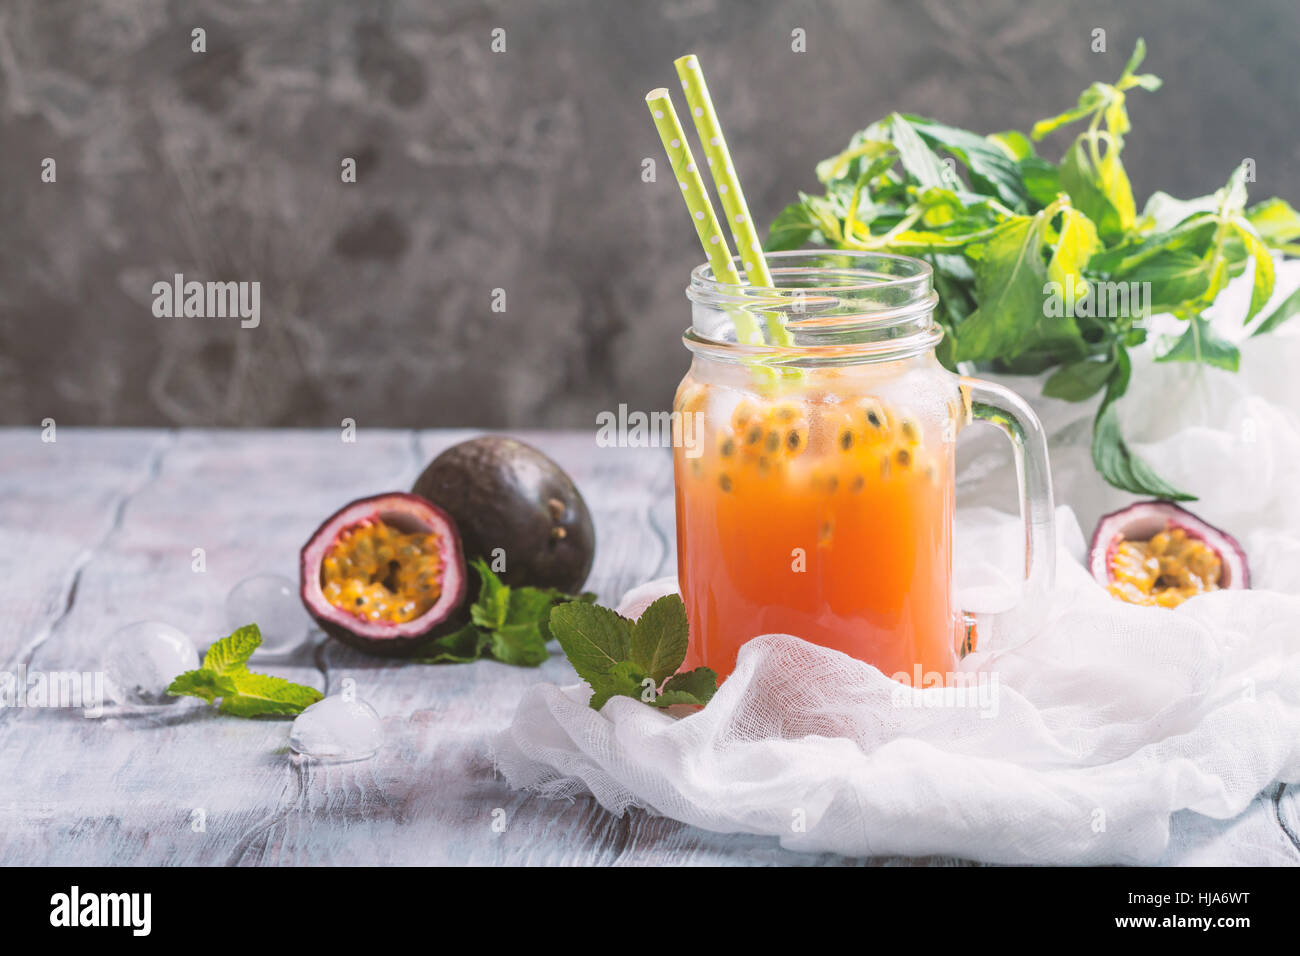 Hausgemachte Limonade mit Maracuja, Minze und Eiswürfel auf grauem  Hintergrund Stockfotografie - Alamy